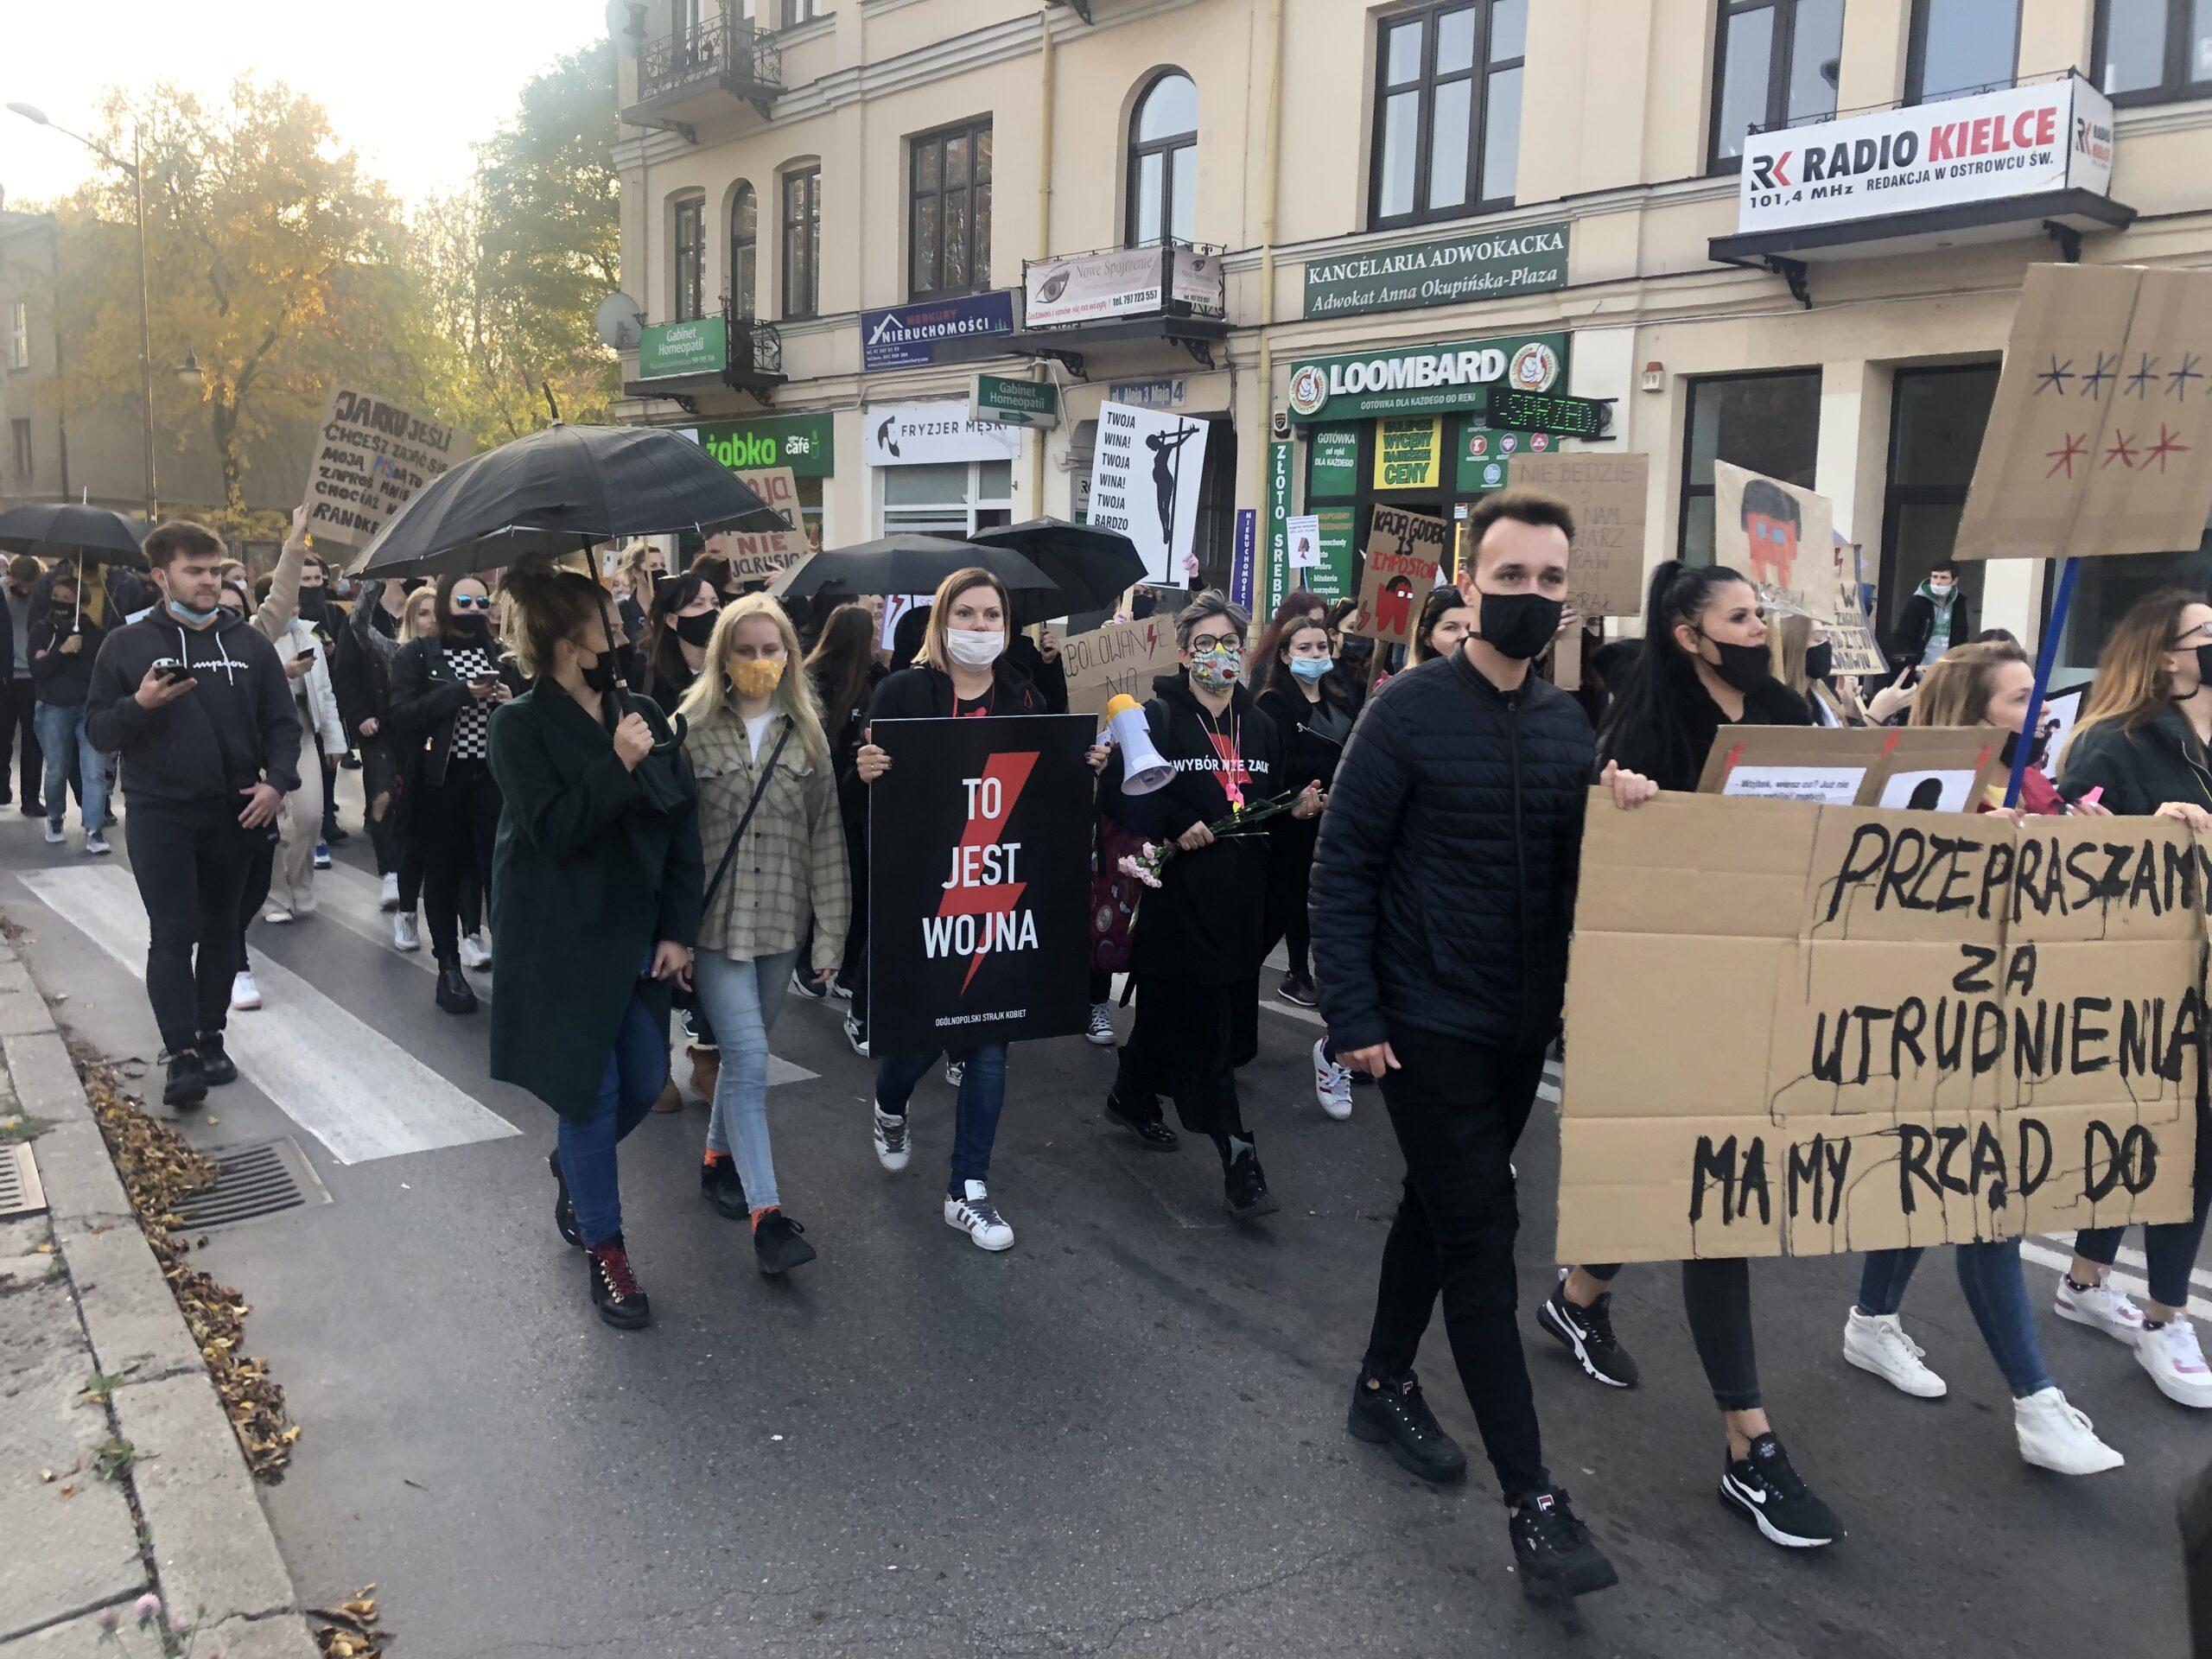 Protestujący w Ostrowcu Świętokrzyskim z transparentami o prawie do aborcji